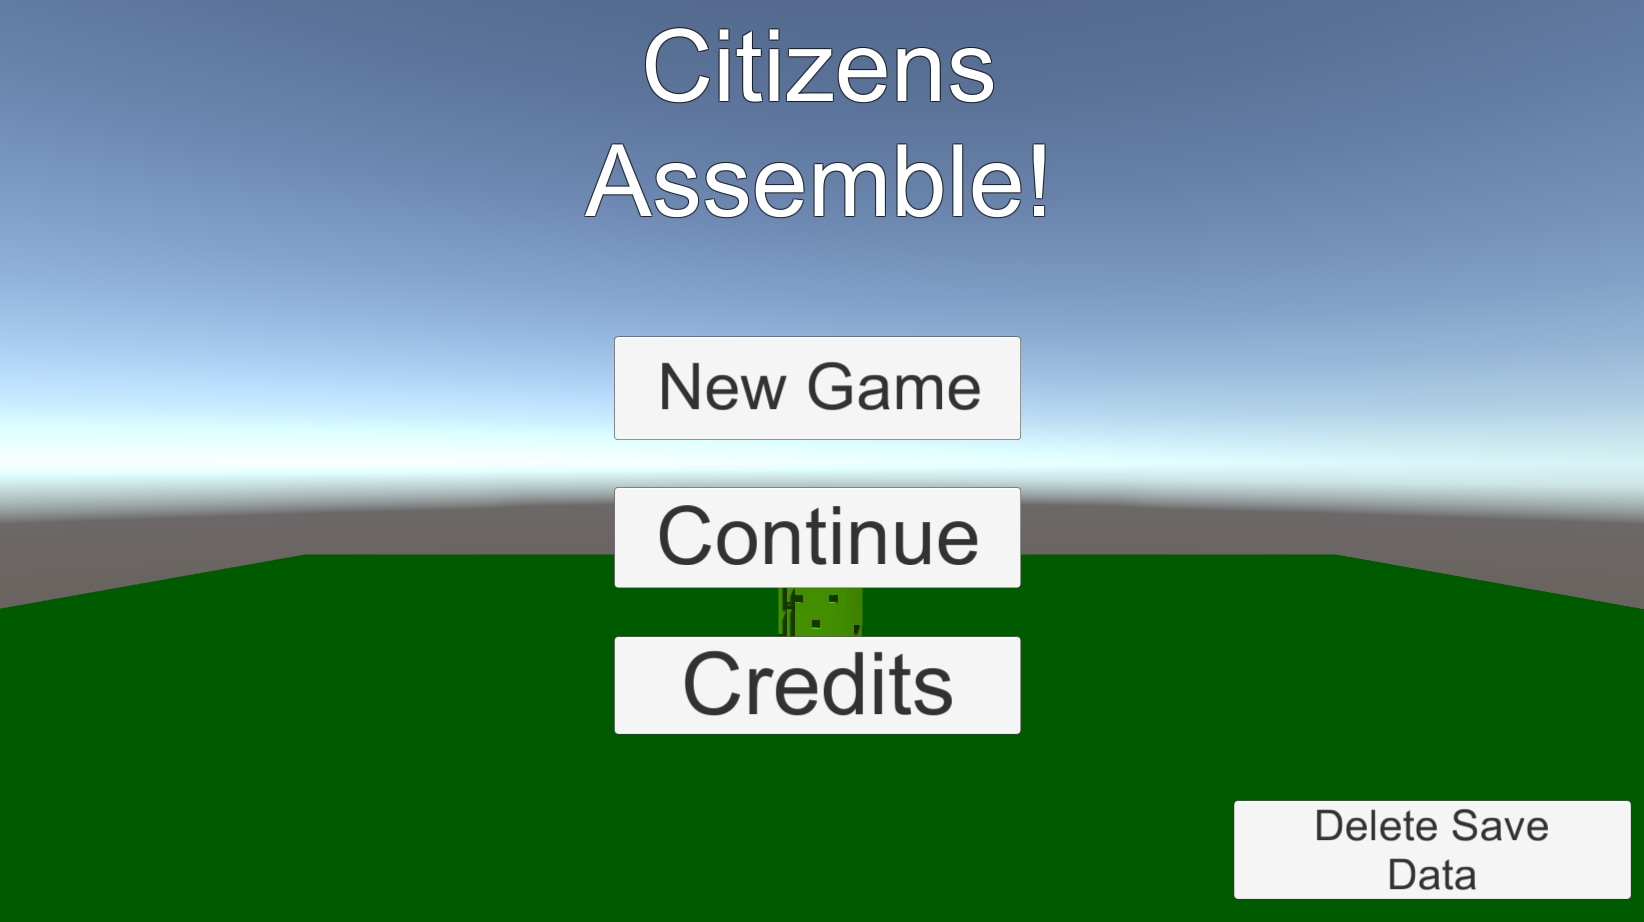 Citizens Assemble!